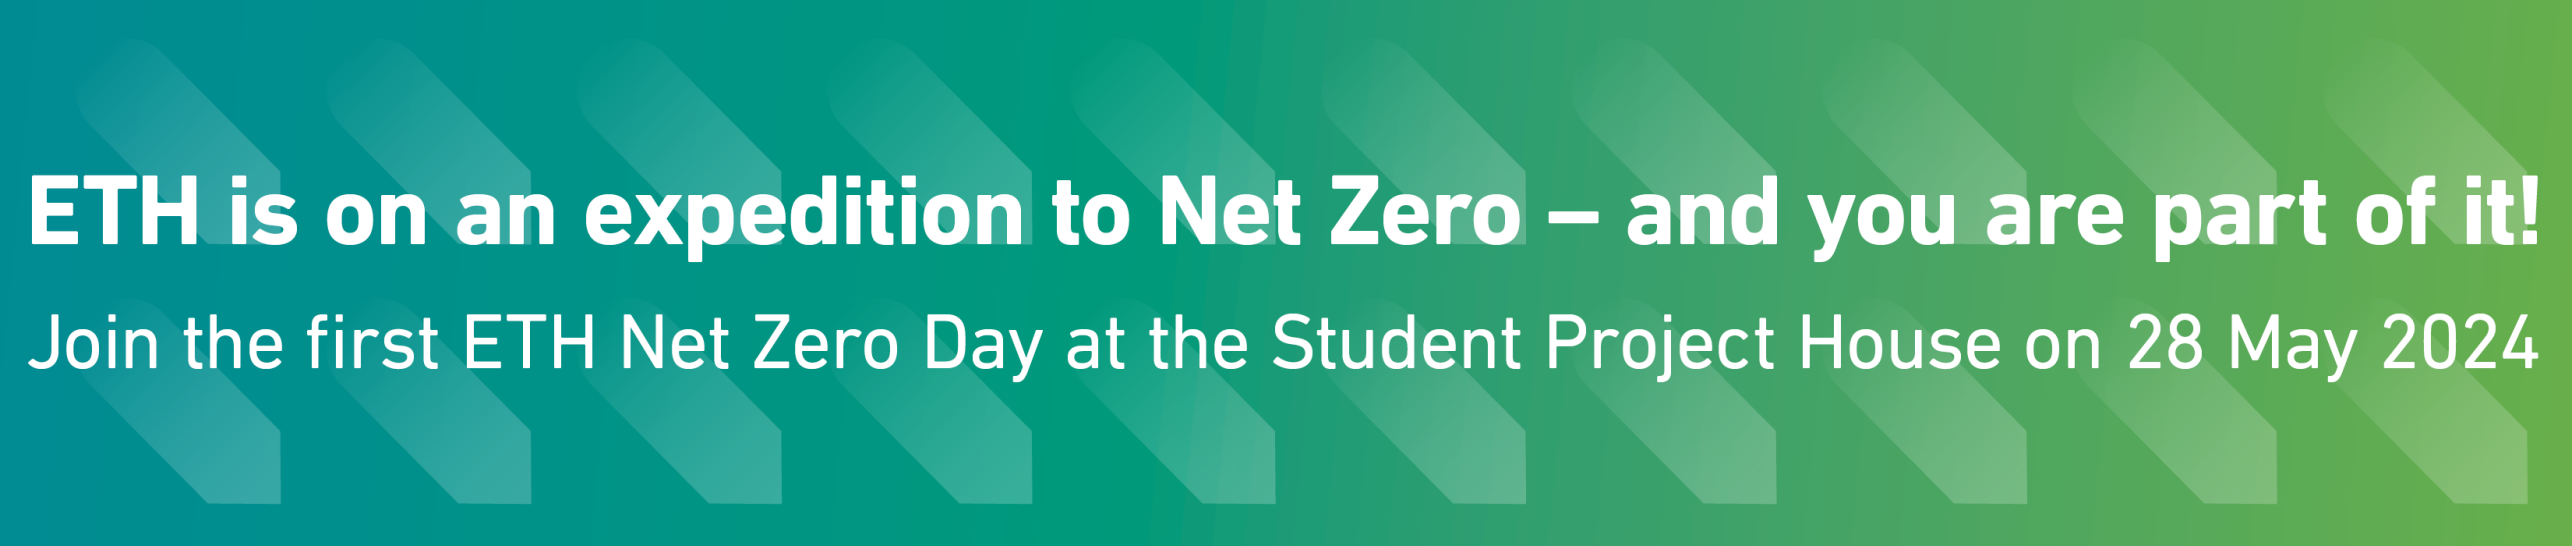 ETH Net Zero Day banner